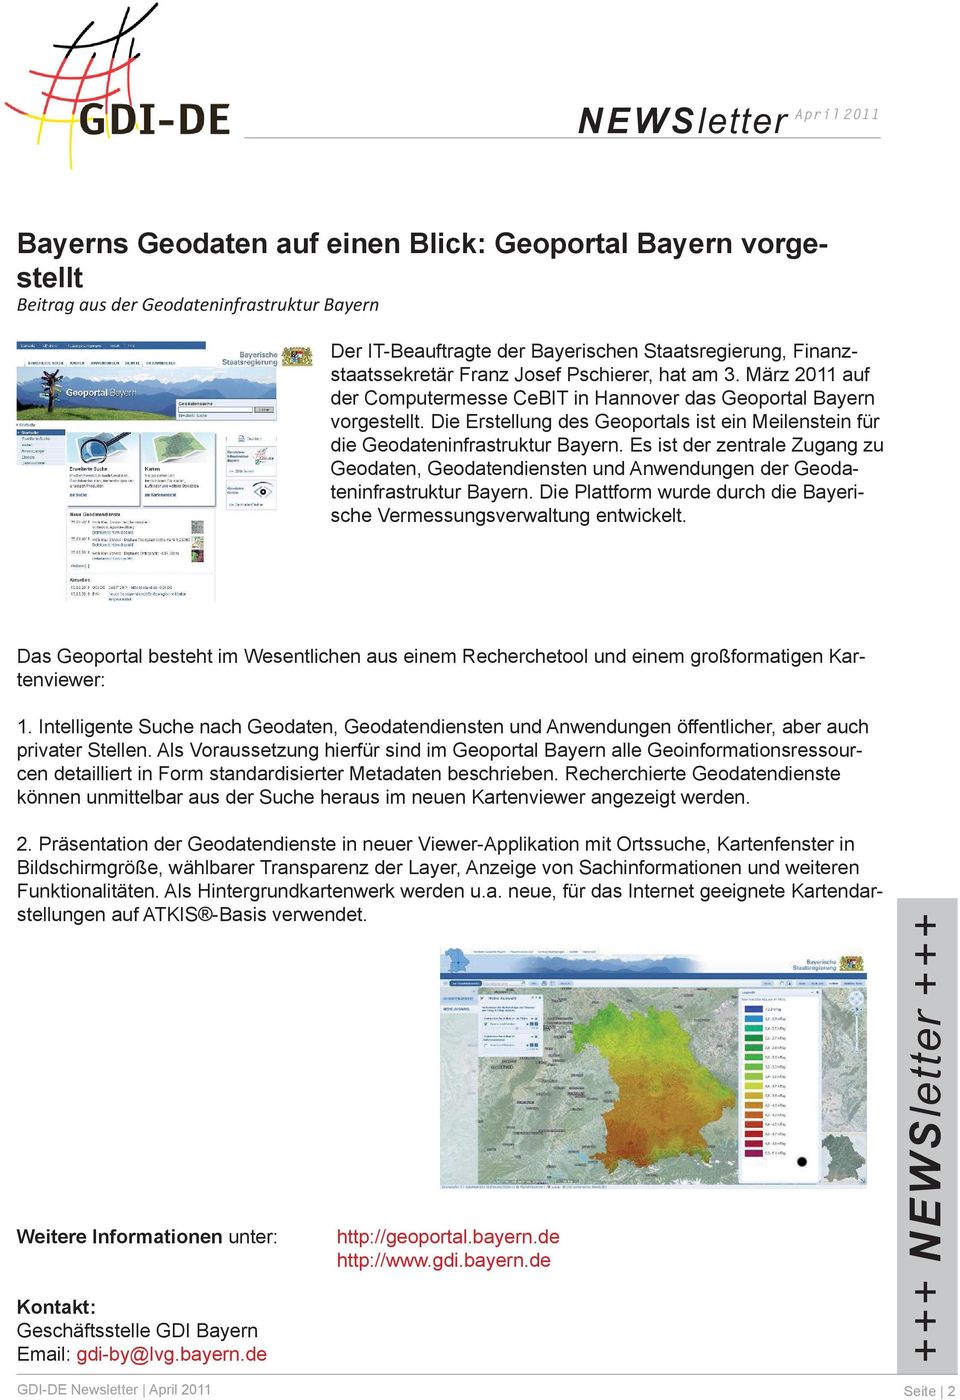 Es ist der zentrale Zugang zu Geodaten, Geodatendiensten und Anwendungen der Geodateninfrastruktur Bayern. Die Plattform wurde durch die Bayerische Vermessungsverwaltung entwickelt.